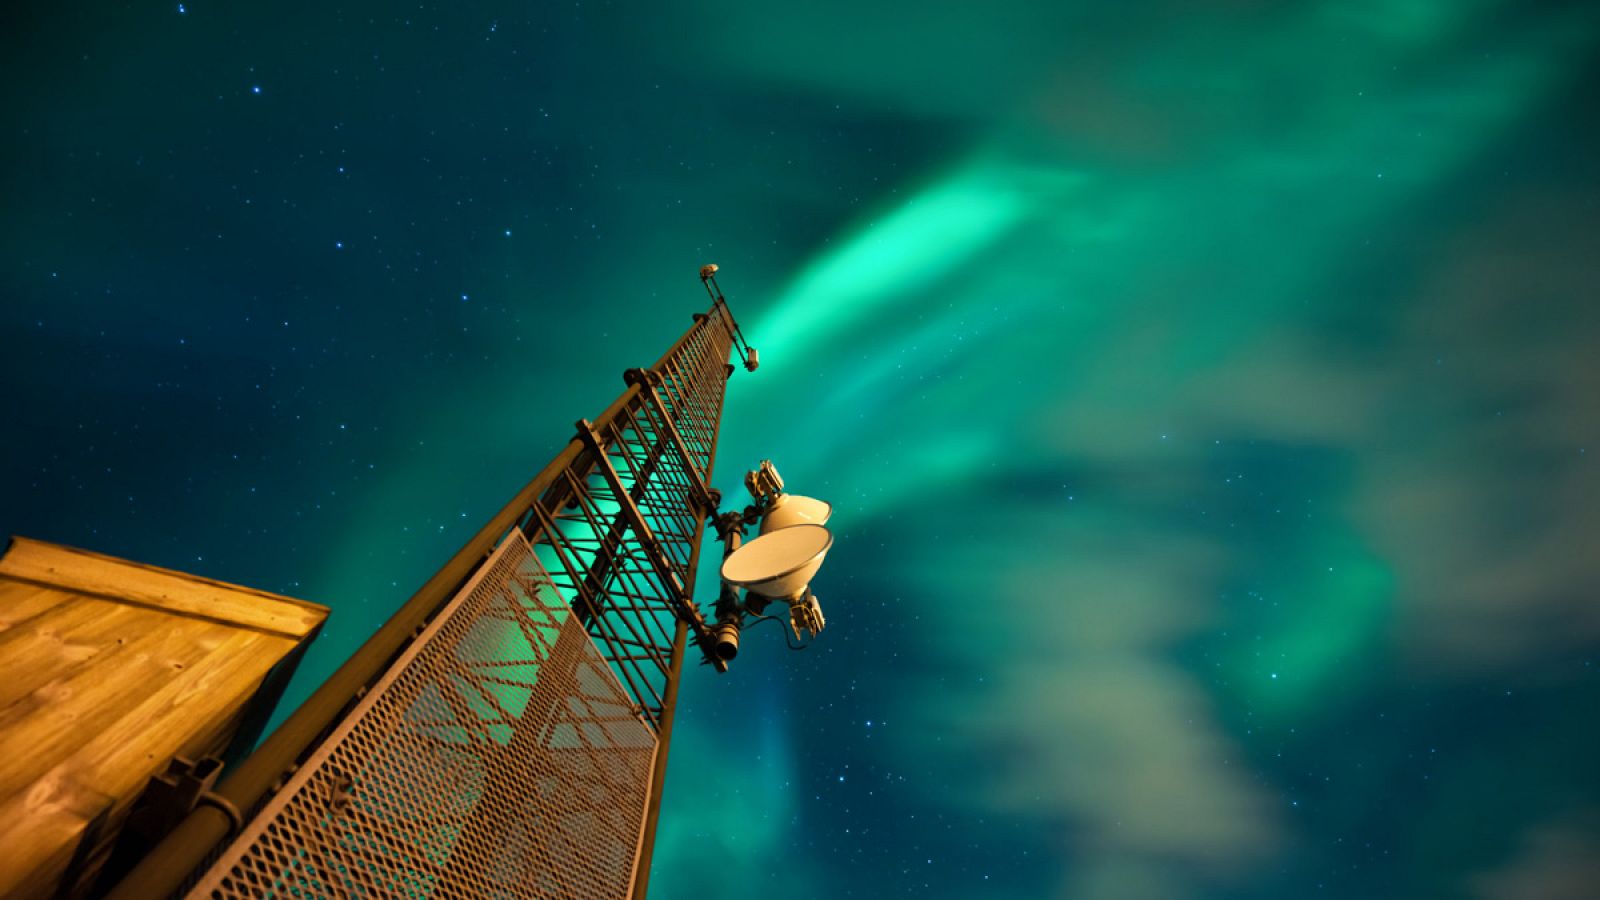 Una torre de telecomunicaciones iluminada por una aurora boreal